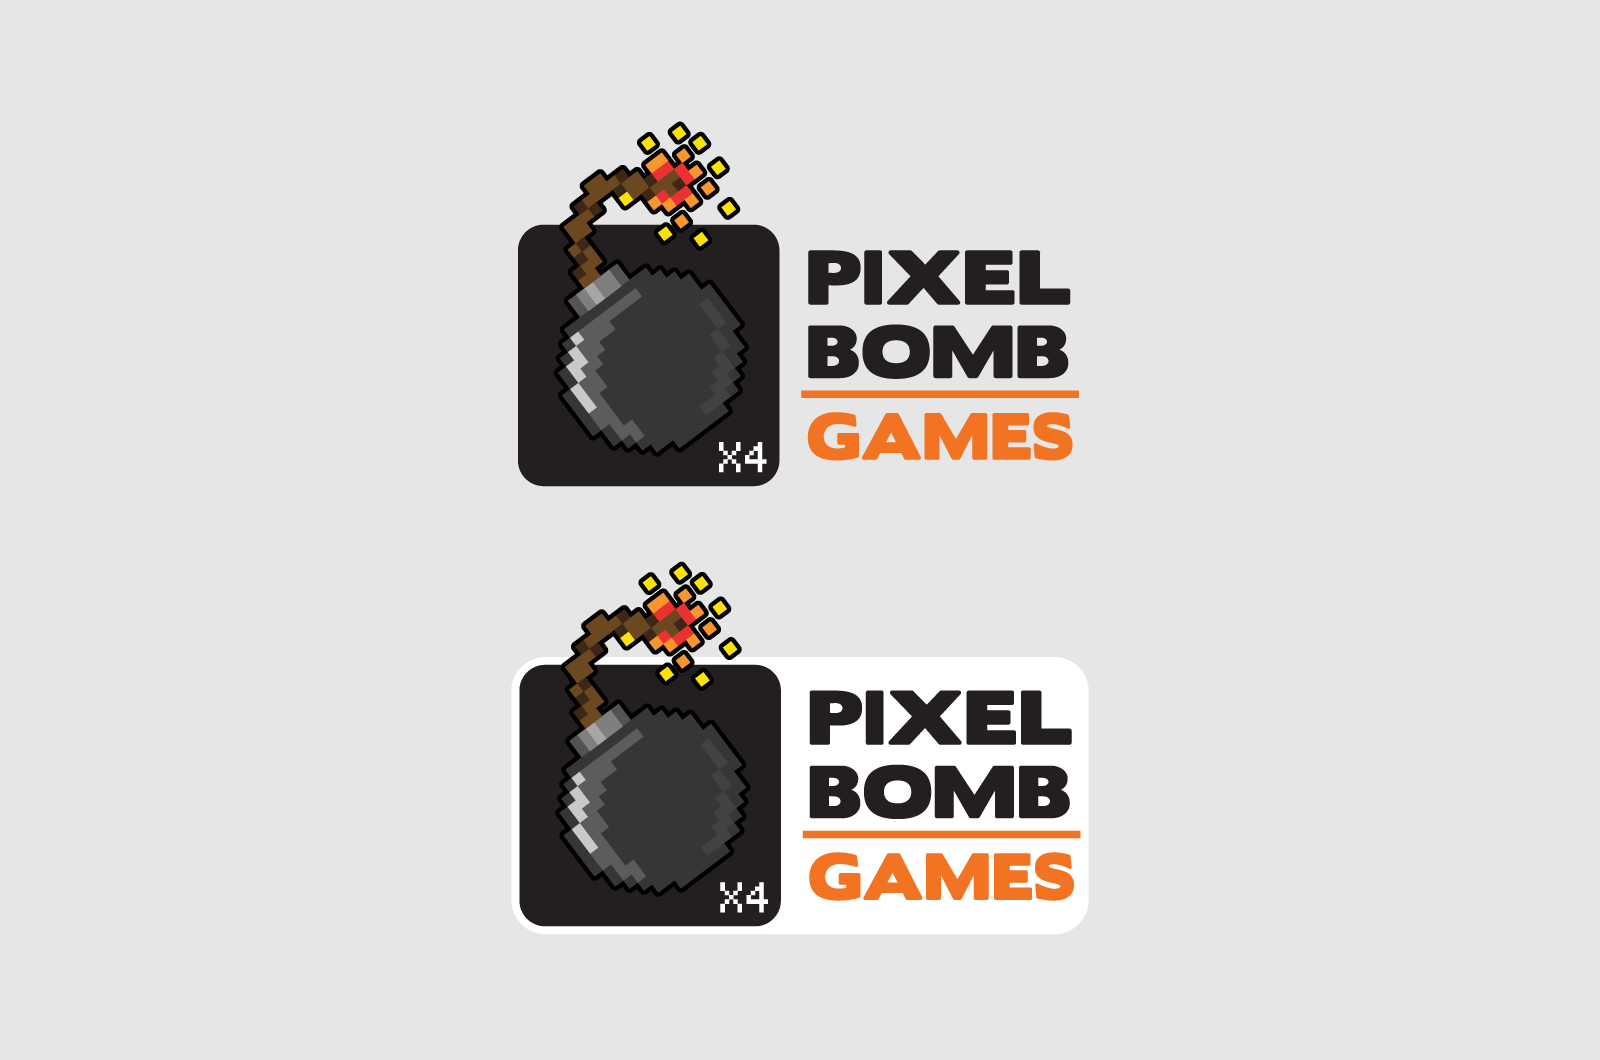 Pixelbomb Games Logos 02